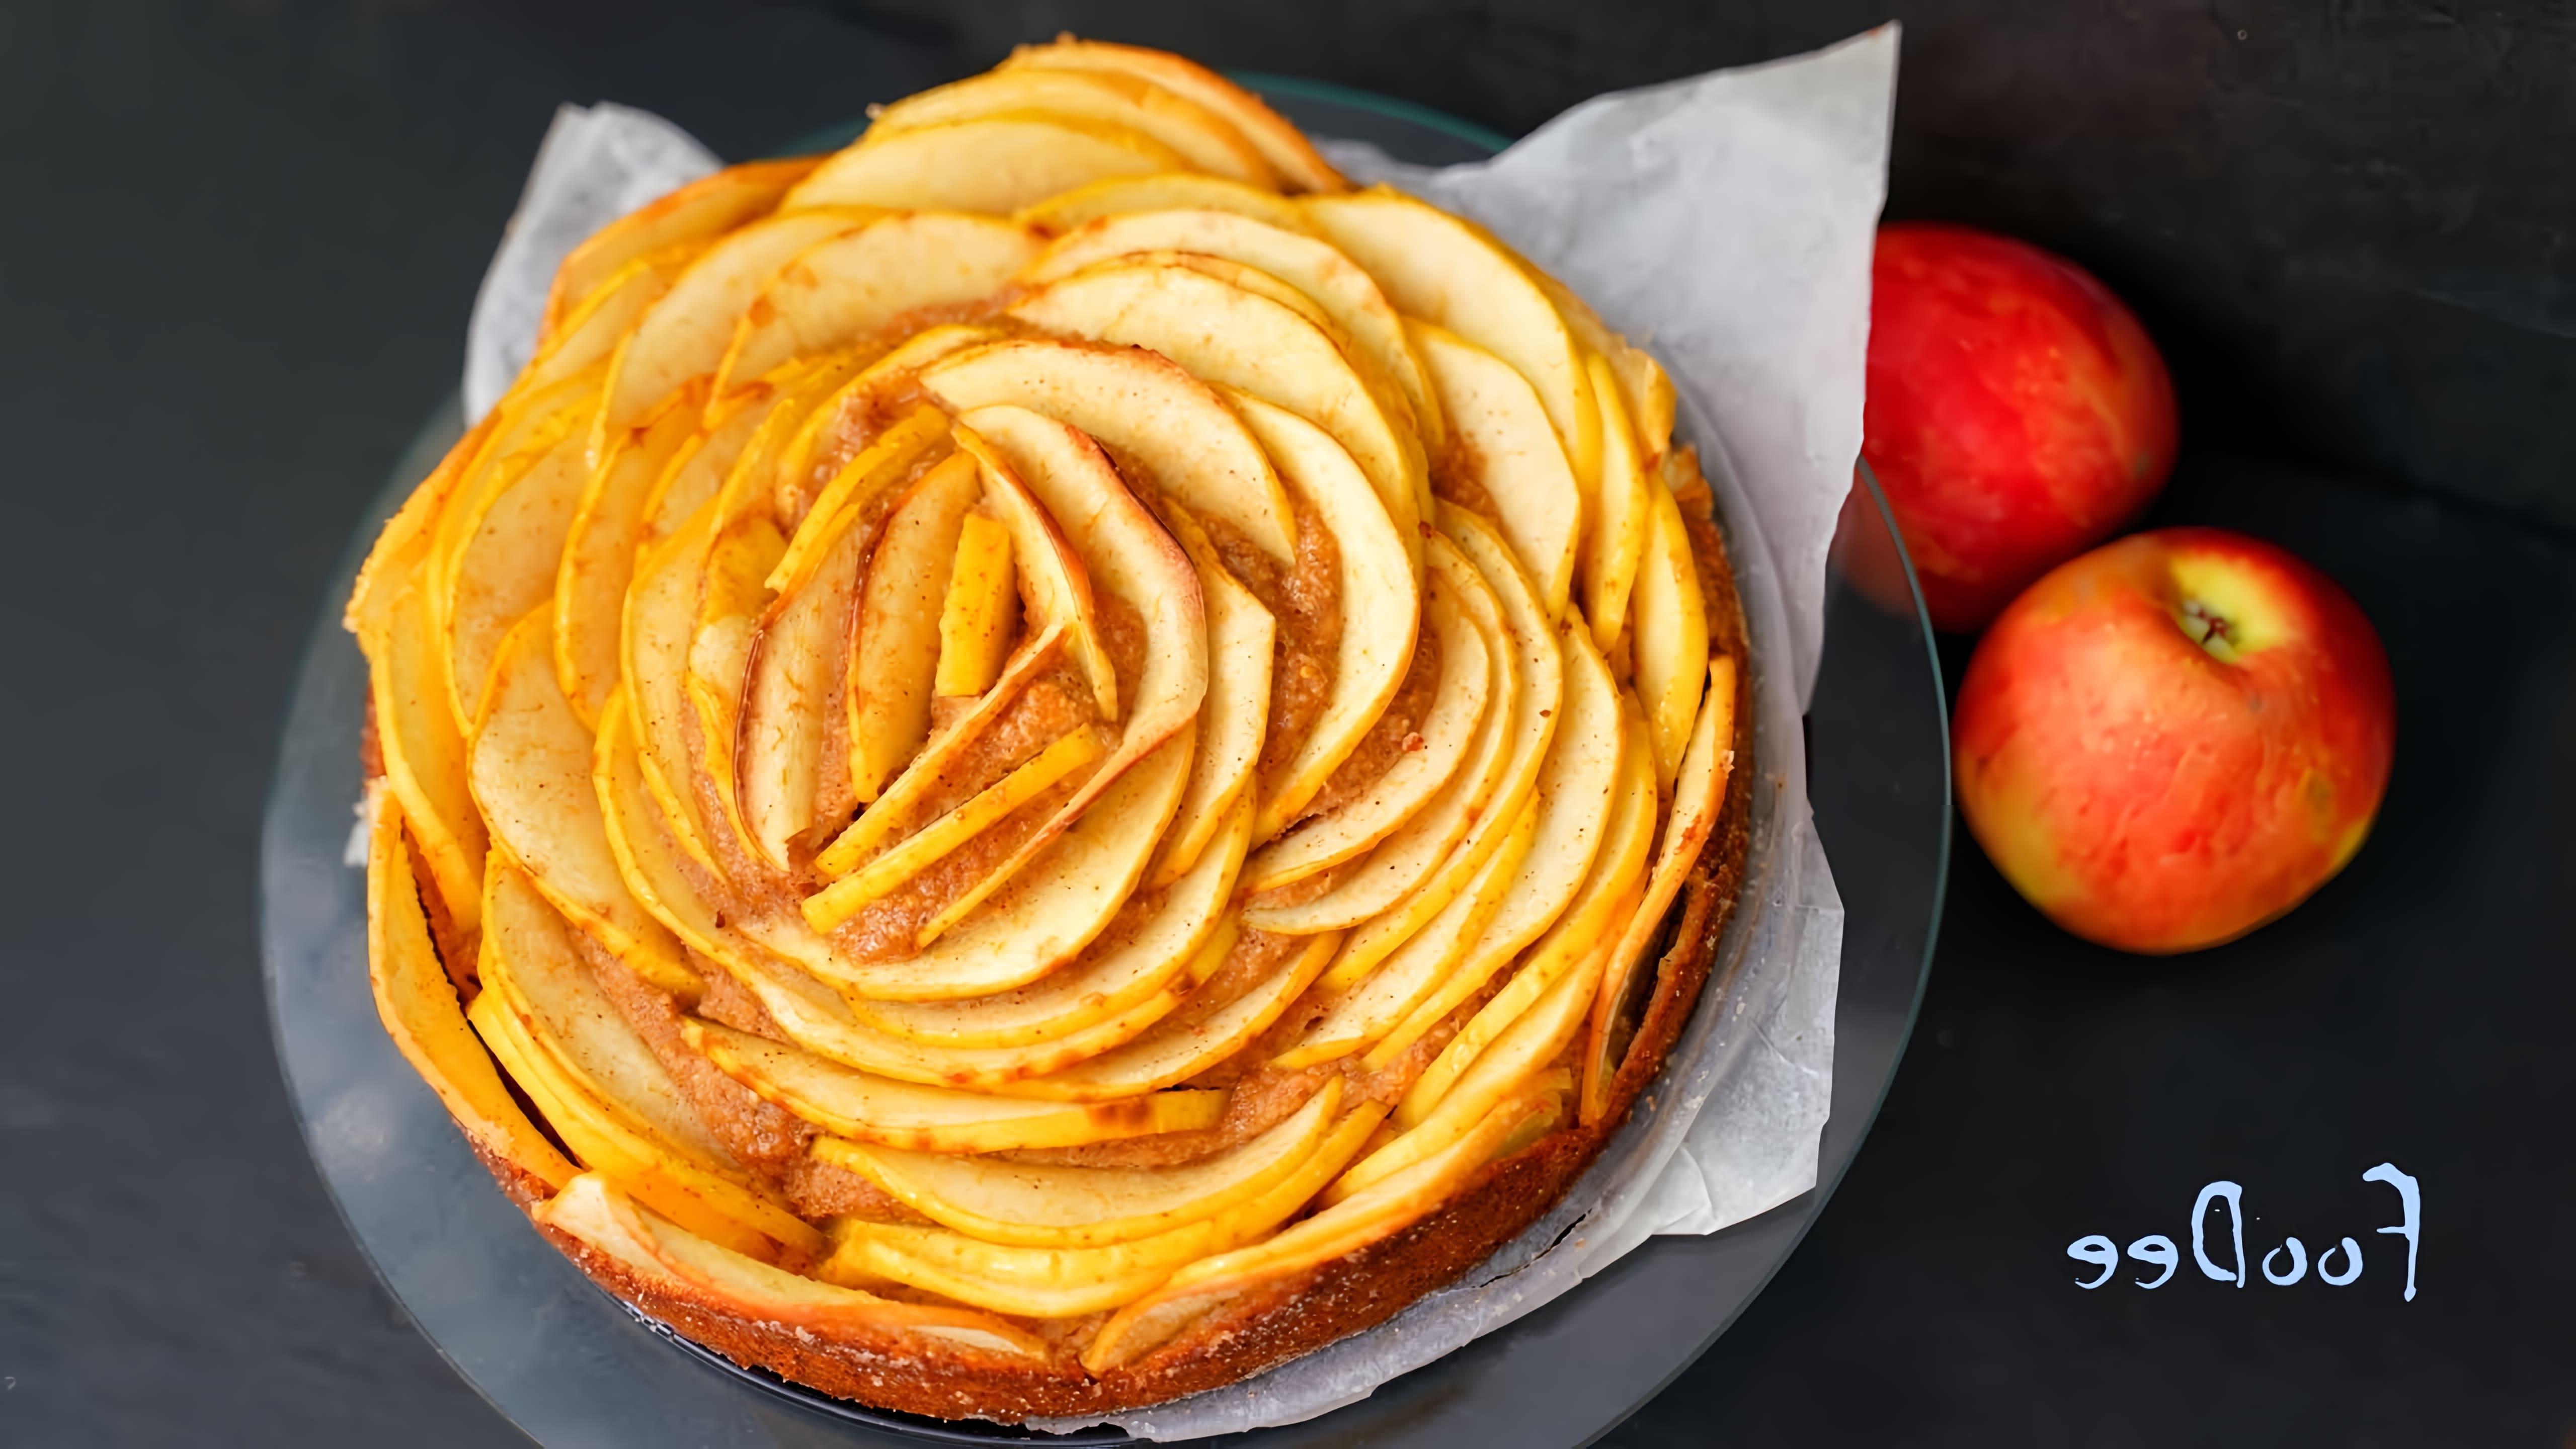 В этом видео демонстрируется рецепт яблочного пирога без сахара, муки и масла